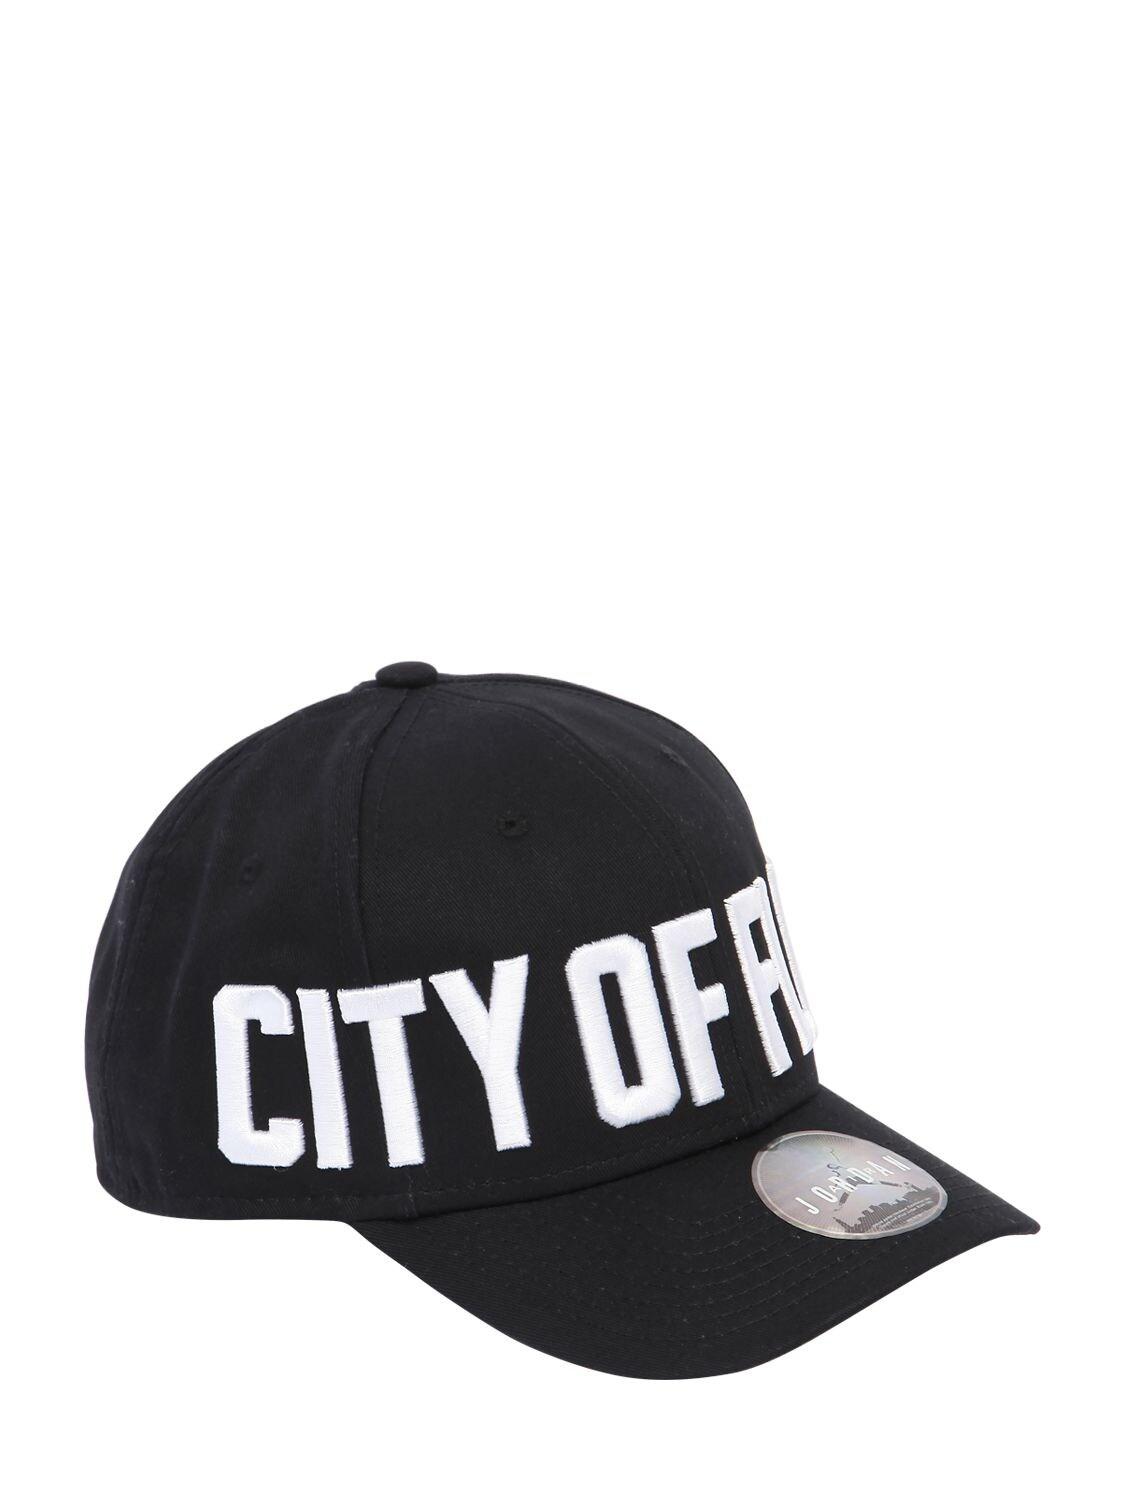 city of flight jordan hat